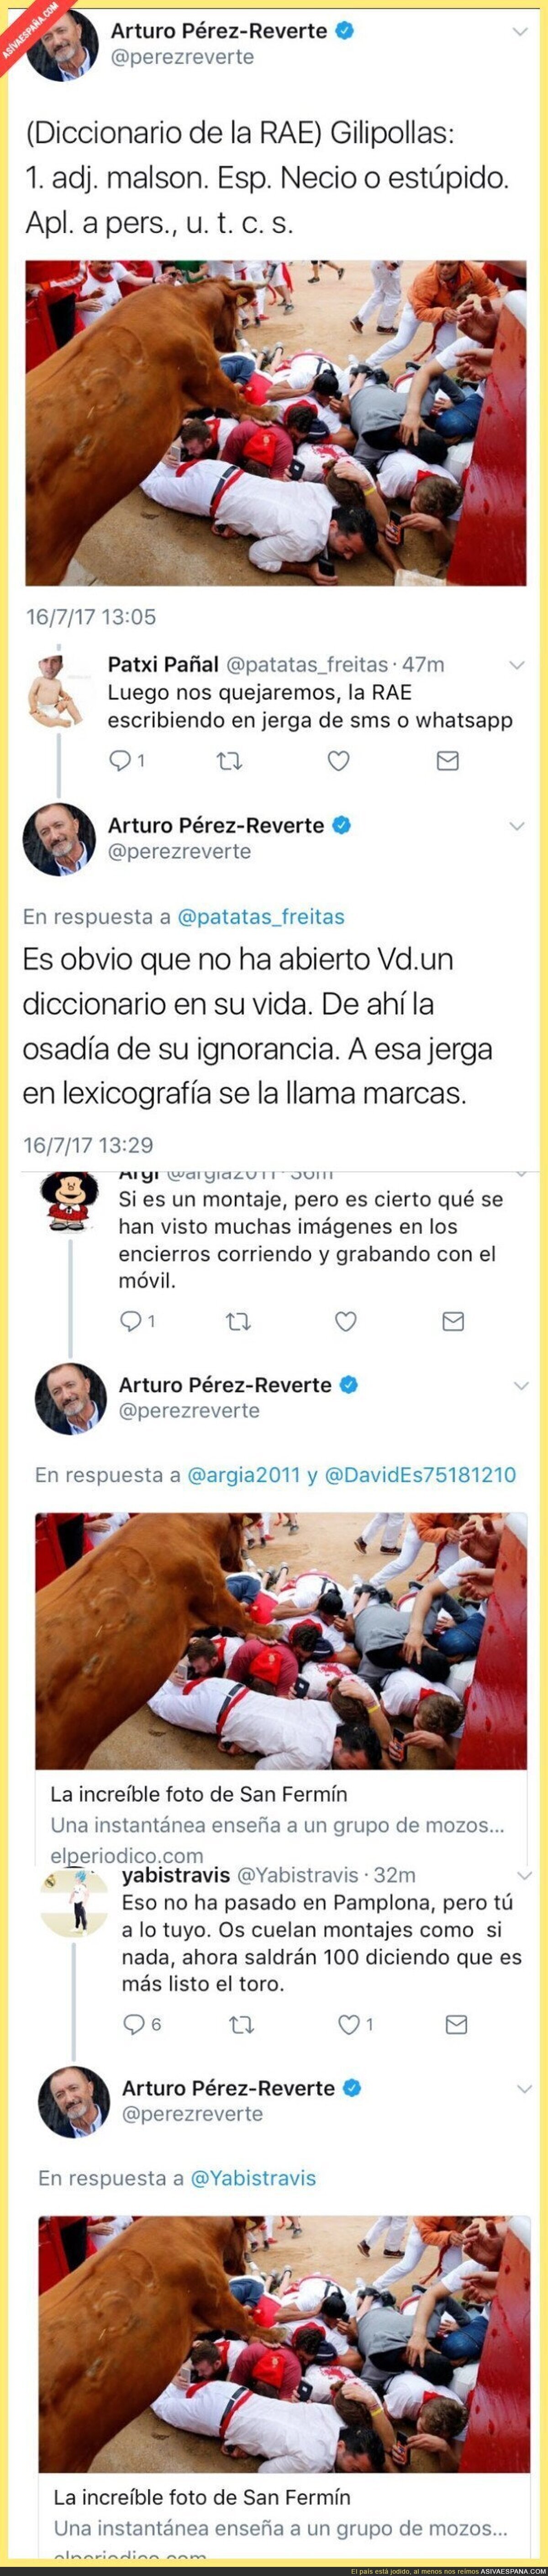 Arturo Pérez-Reverte insulta a estos mozos, le replican y se llevan varios zascas para casa